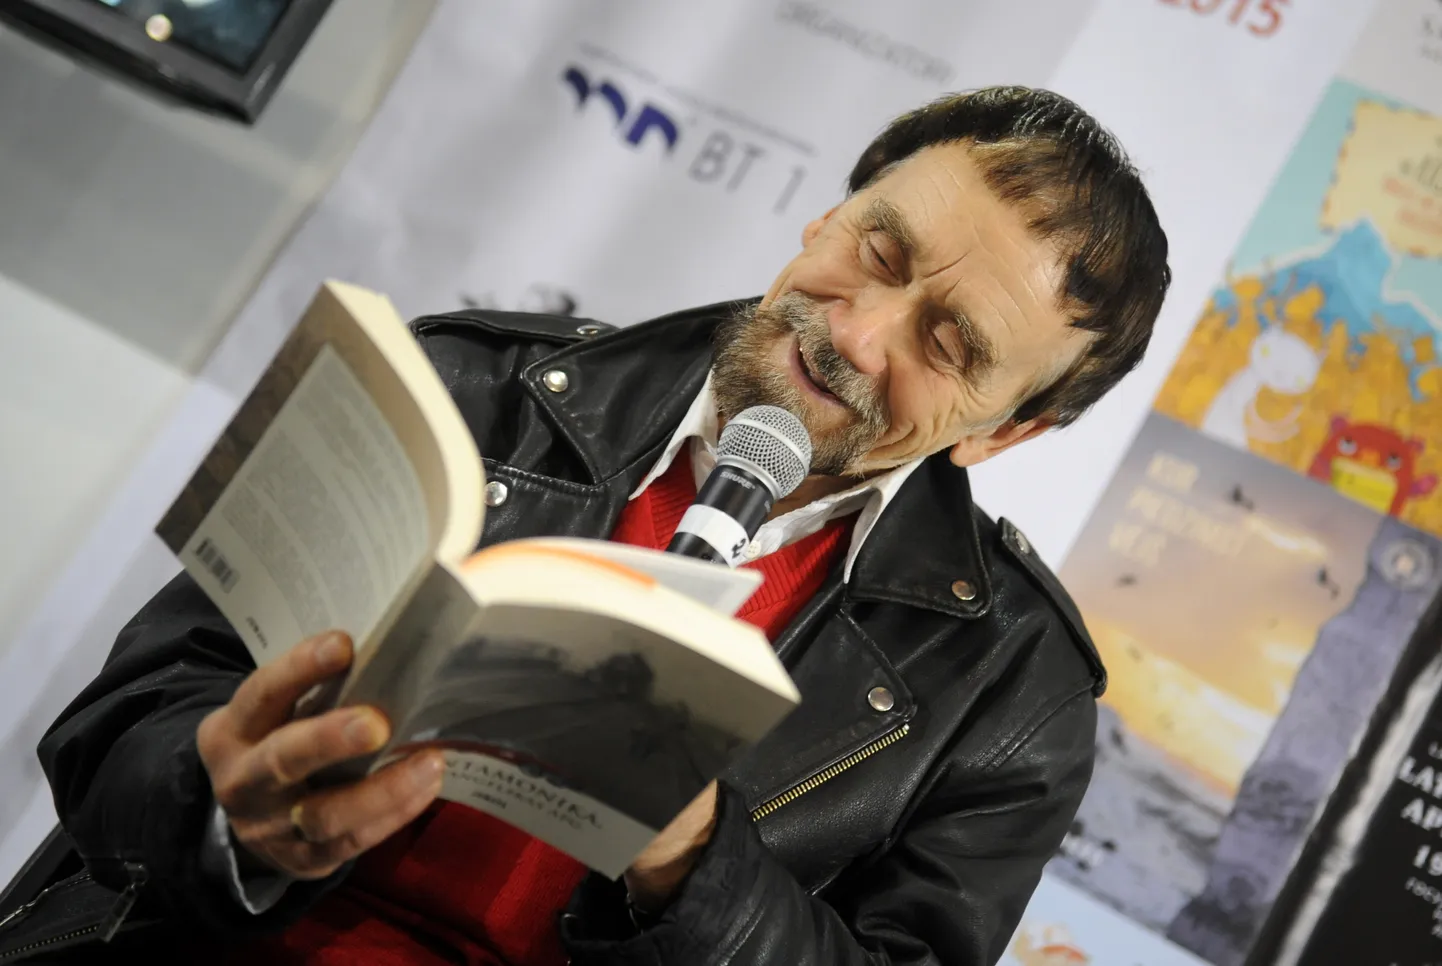 Rakstnieks Viks savas jaunās grāmatas "Santamonika, Arhangeļskas apg." atvēršanas svētkos "Latvijas Grāmatu izstādes 2015" laikā Ķīpsalas izstāžu centrā.